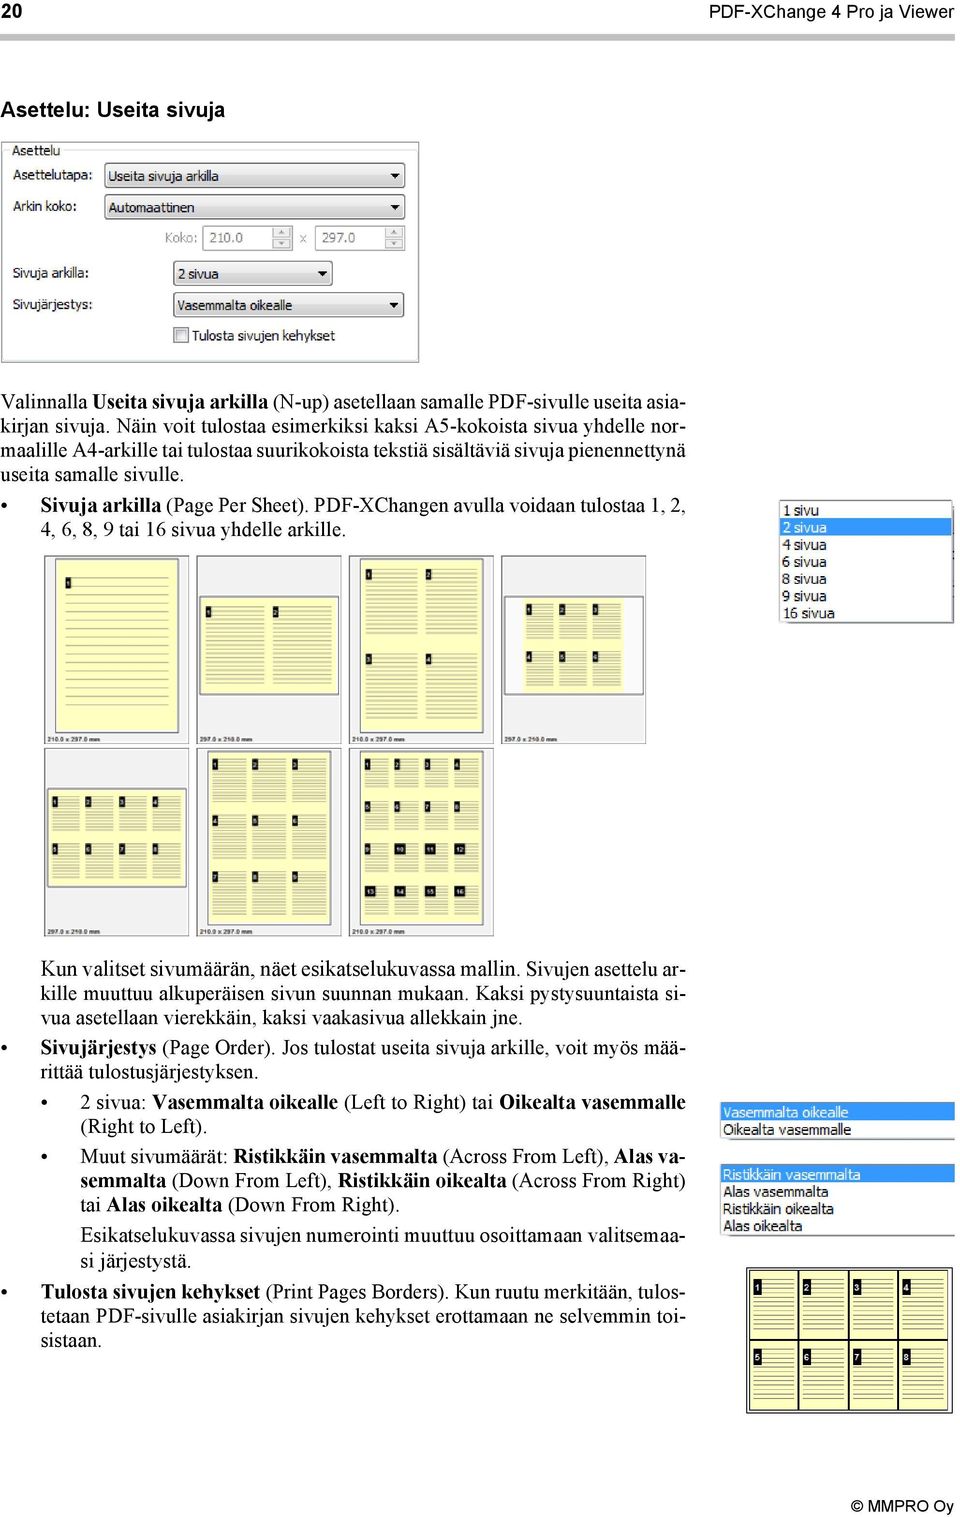 Sivuja arkilla (Page Per Sheet). PDF-XChangen avulla voidaan tulostaa 1, 2, 4, 6, 8, 9 tai 16 sivua yhdelle arkille. Kun valitset sivumäärän, näet esikatselukuvassa mallin.